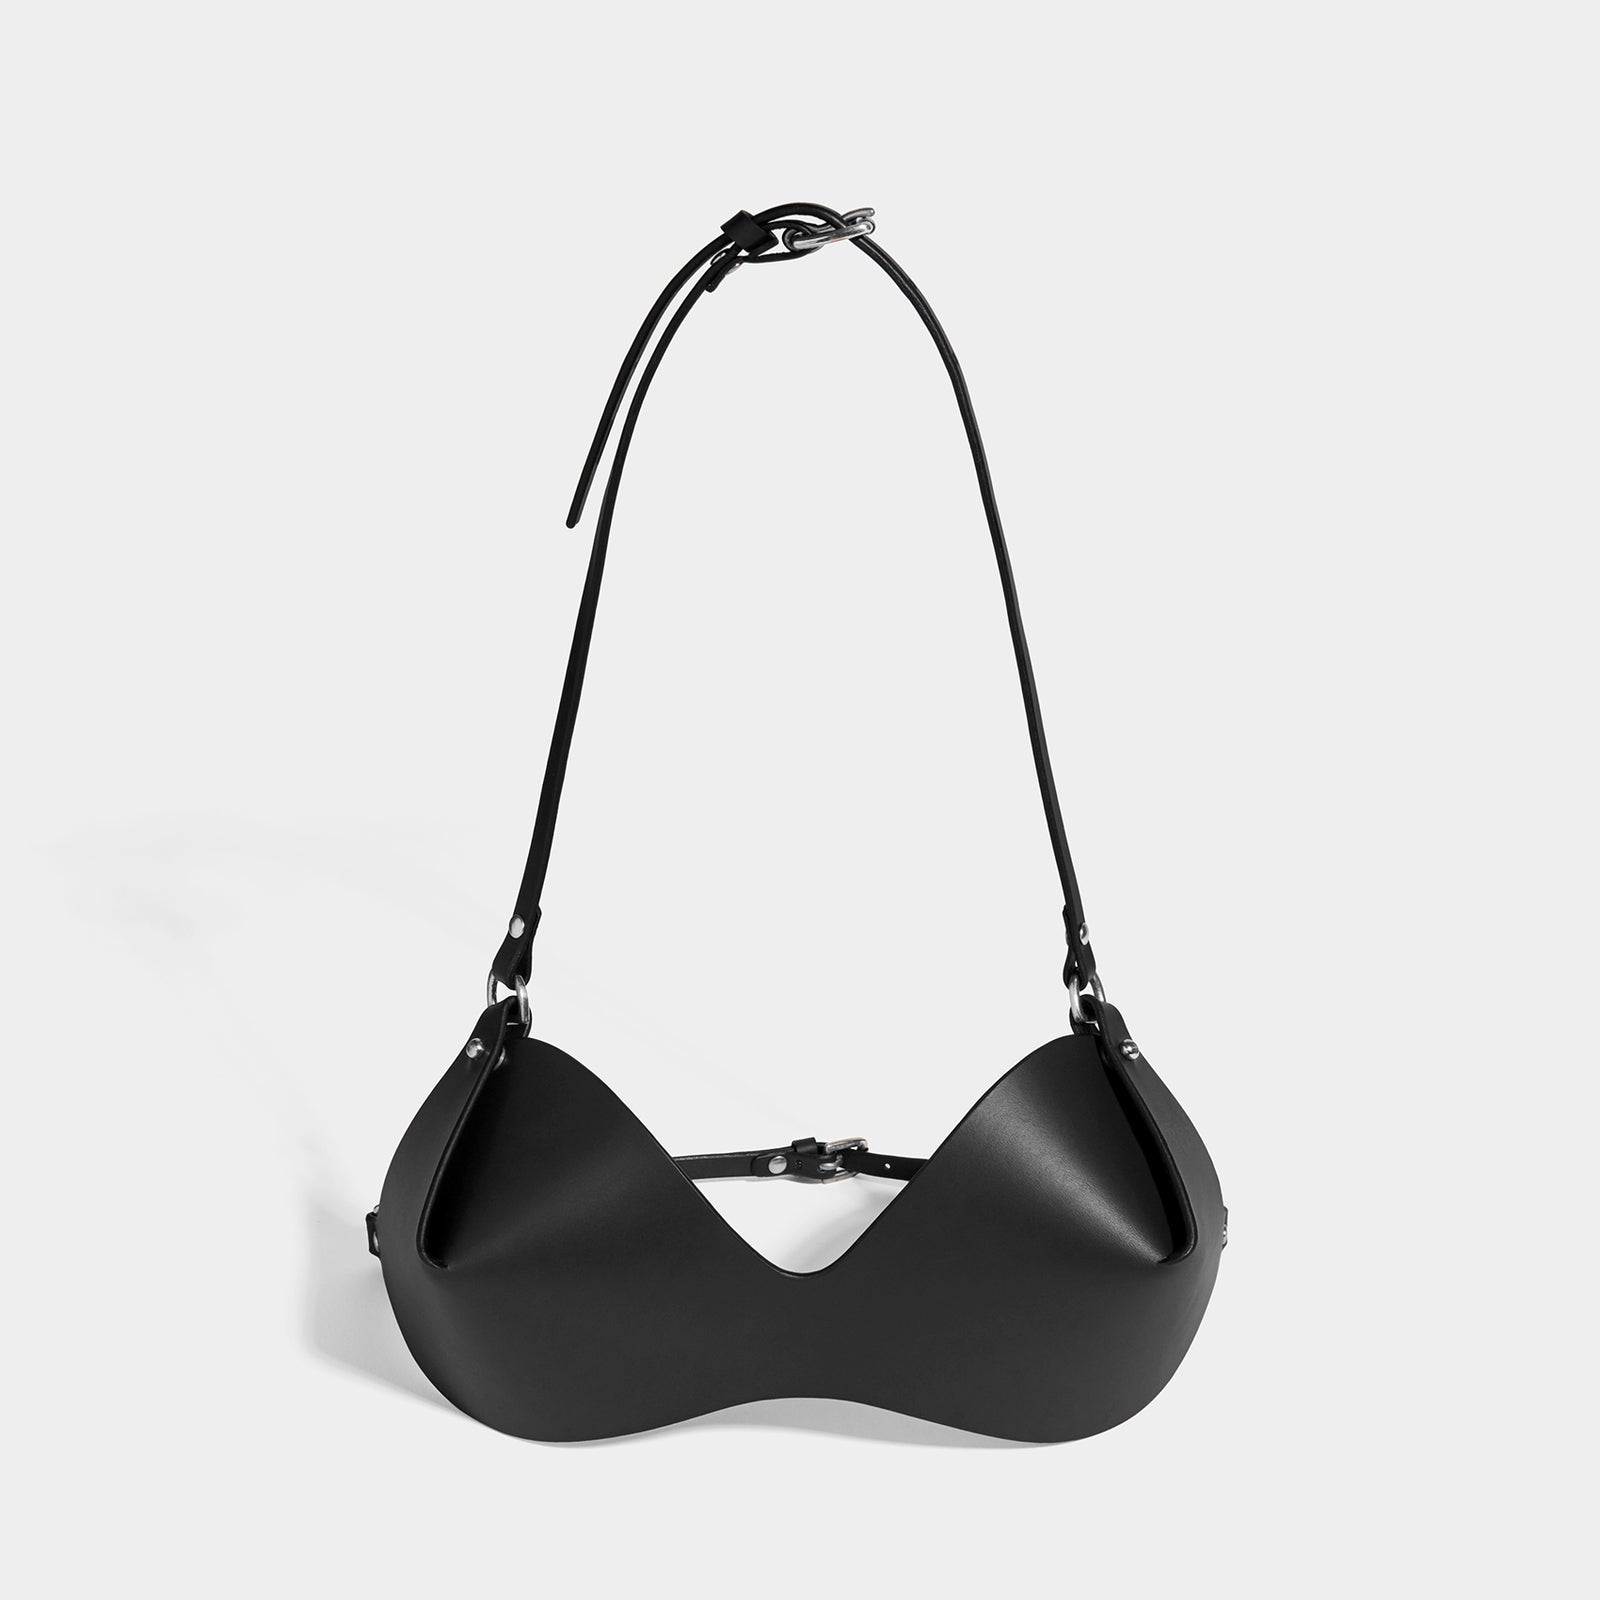 Leather bra in black - The Sei